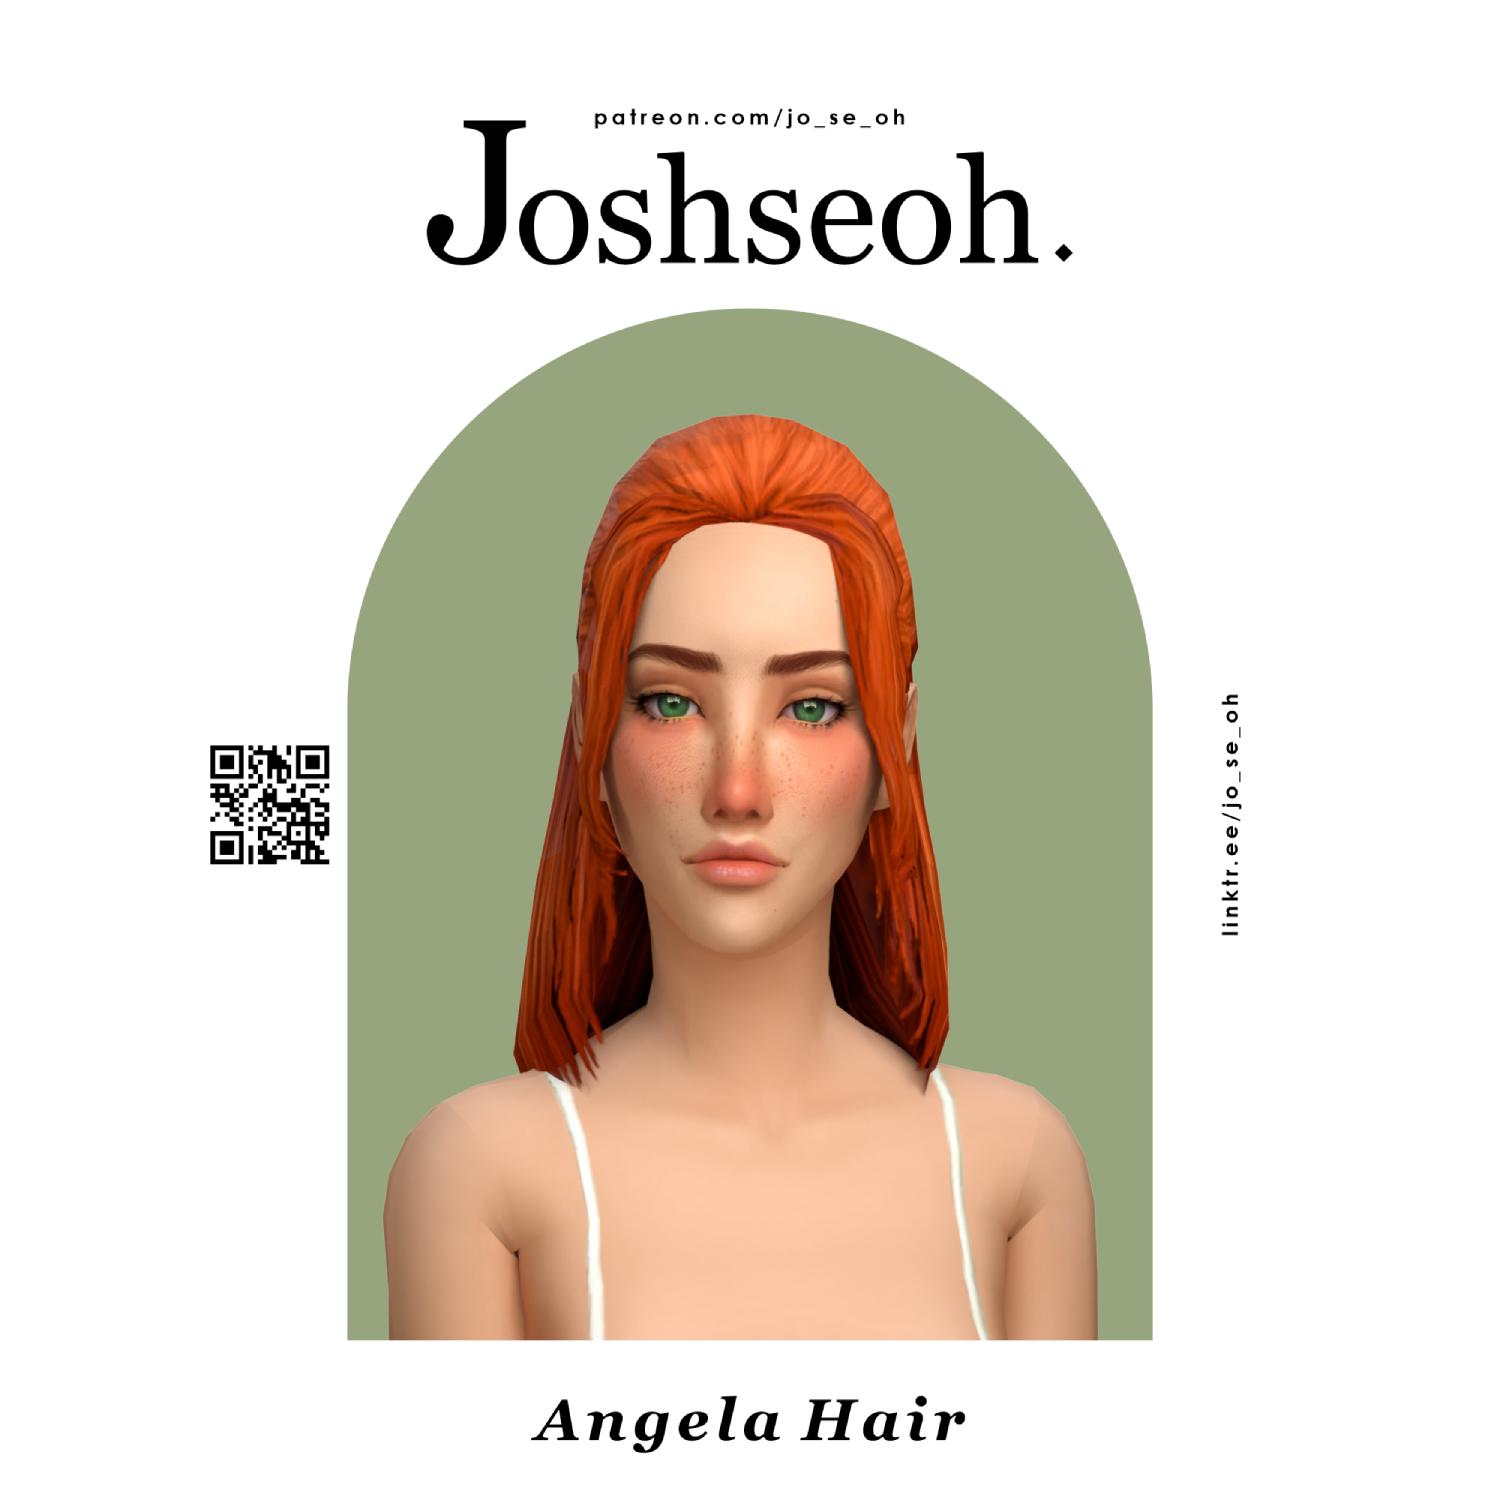 Angela Hair (TS2 conversion) - The Sims 4 Create a Sim - CurseForge